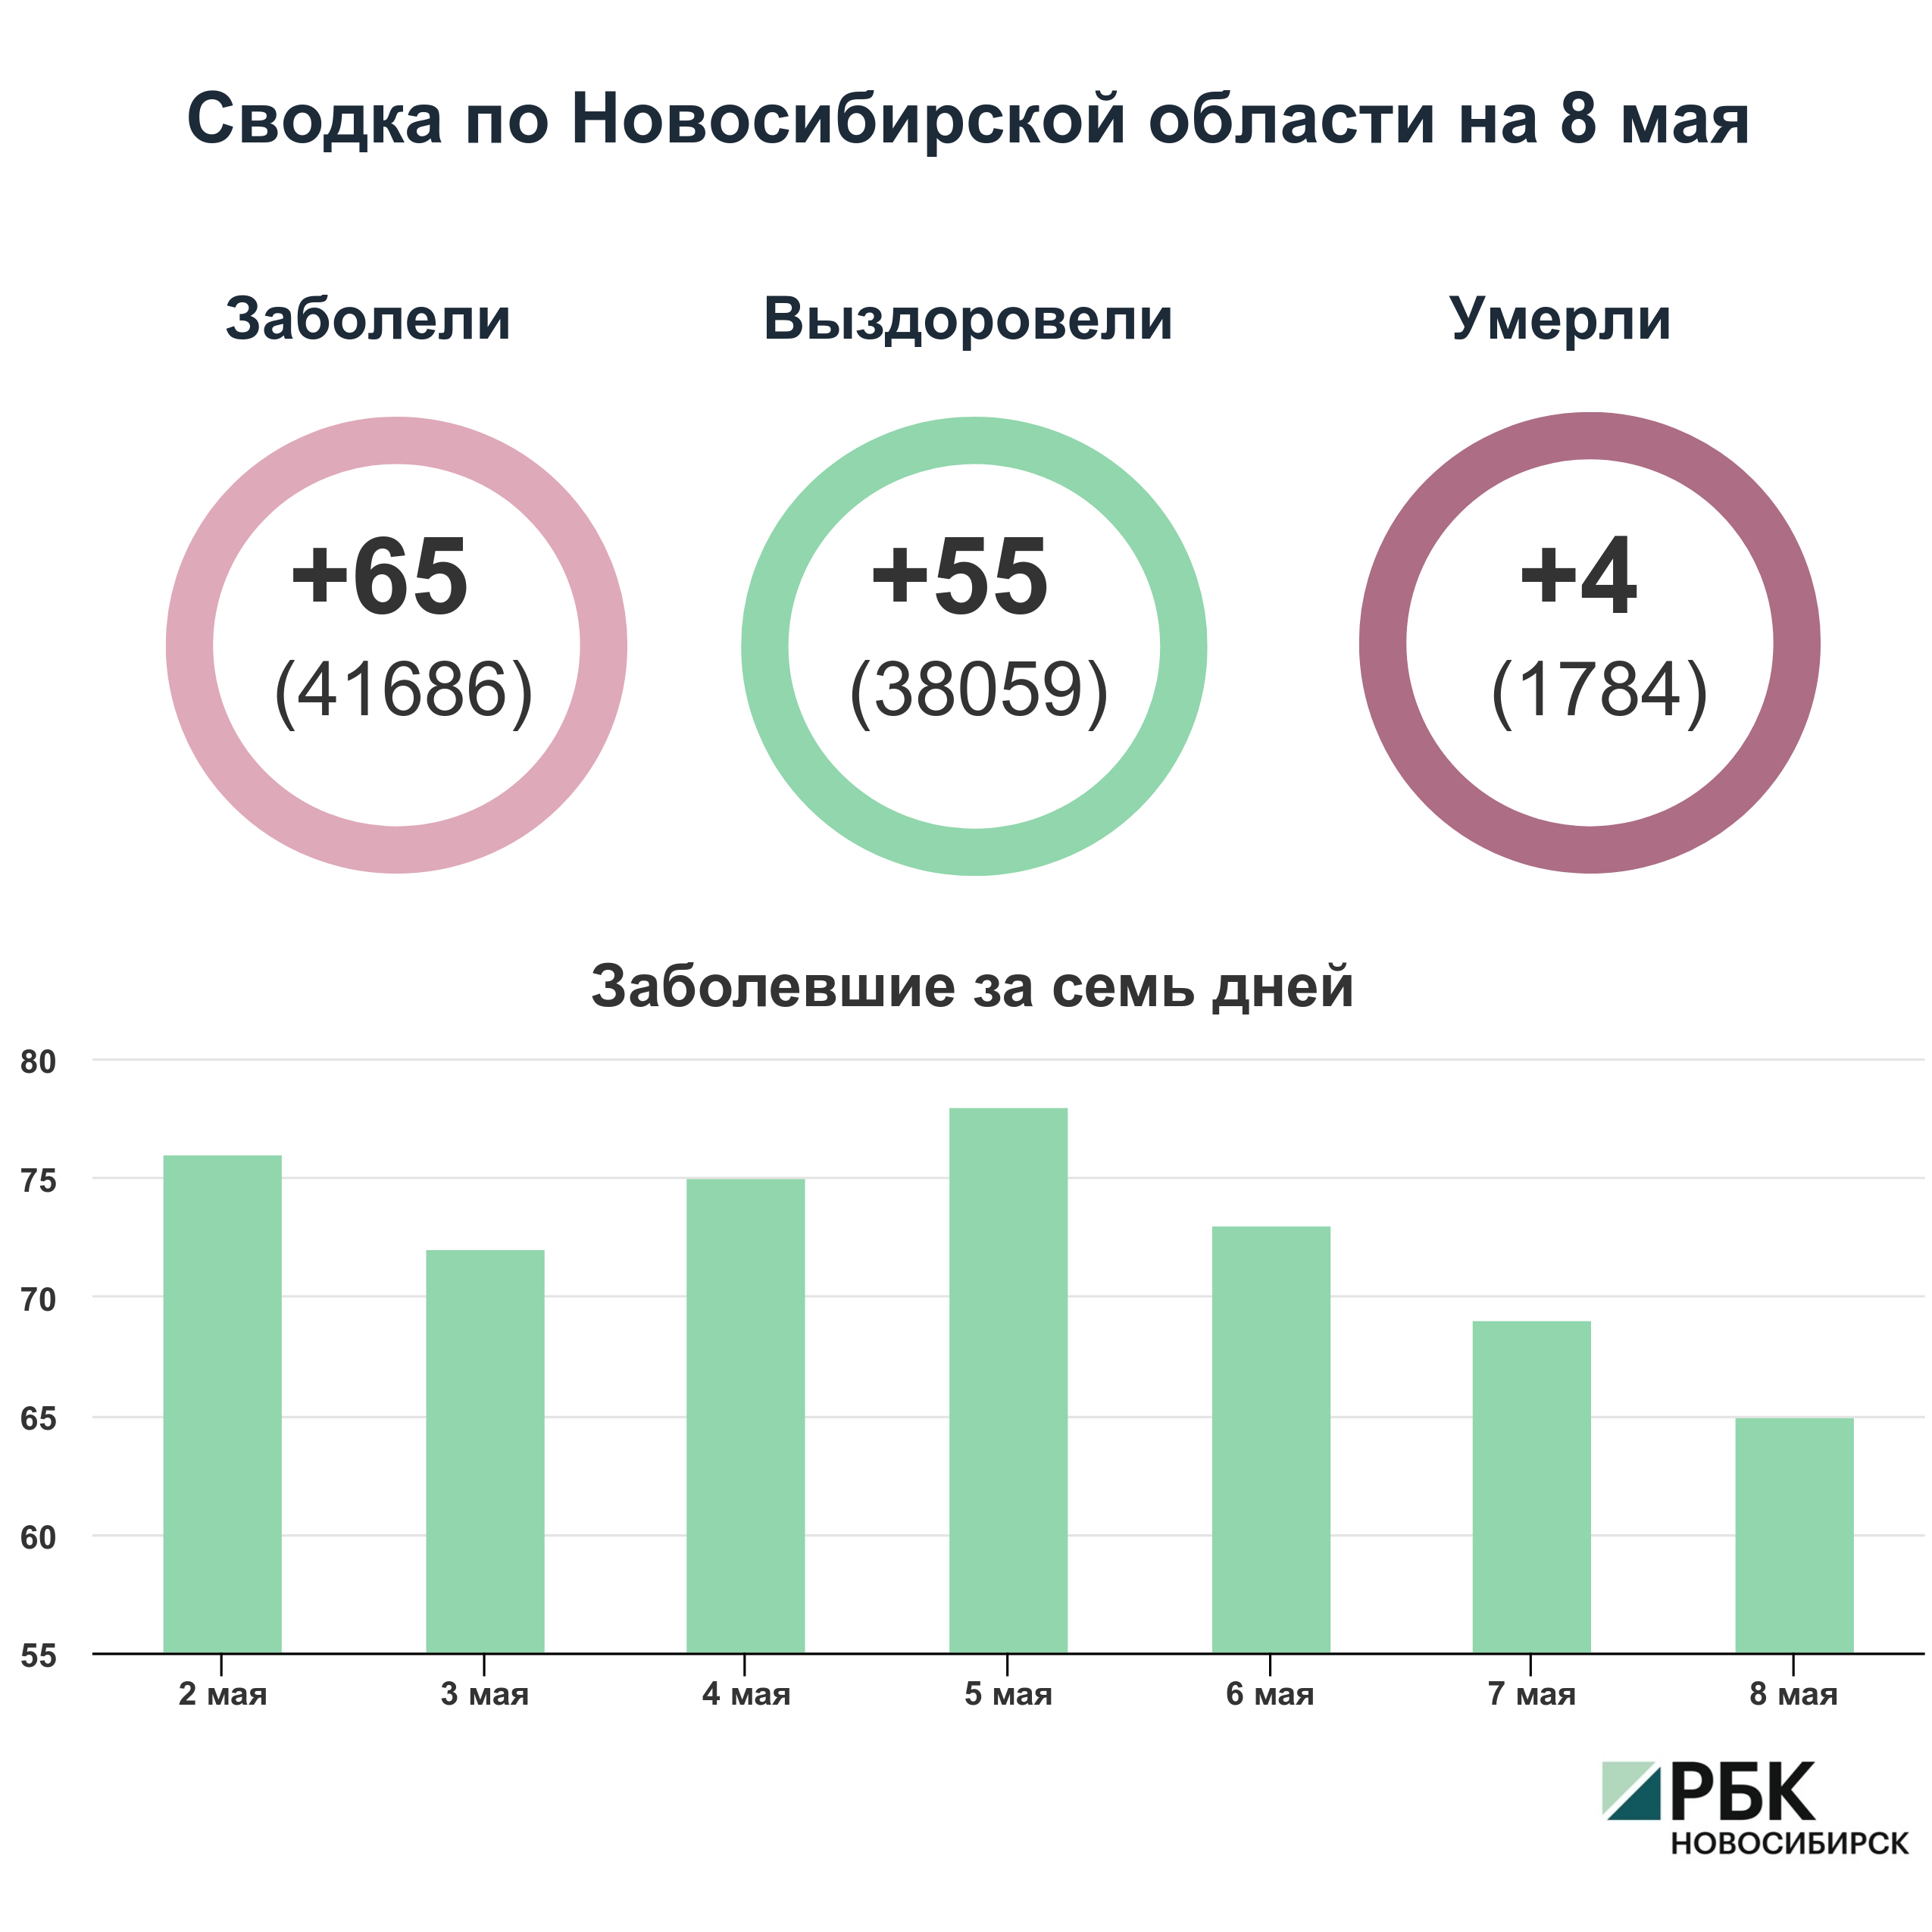 Коронавирус в Новосибирске: сводка на 8 мая